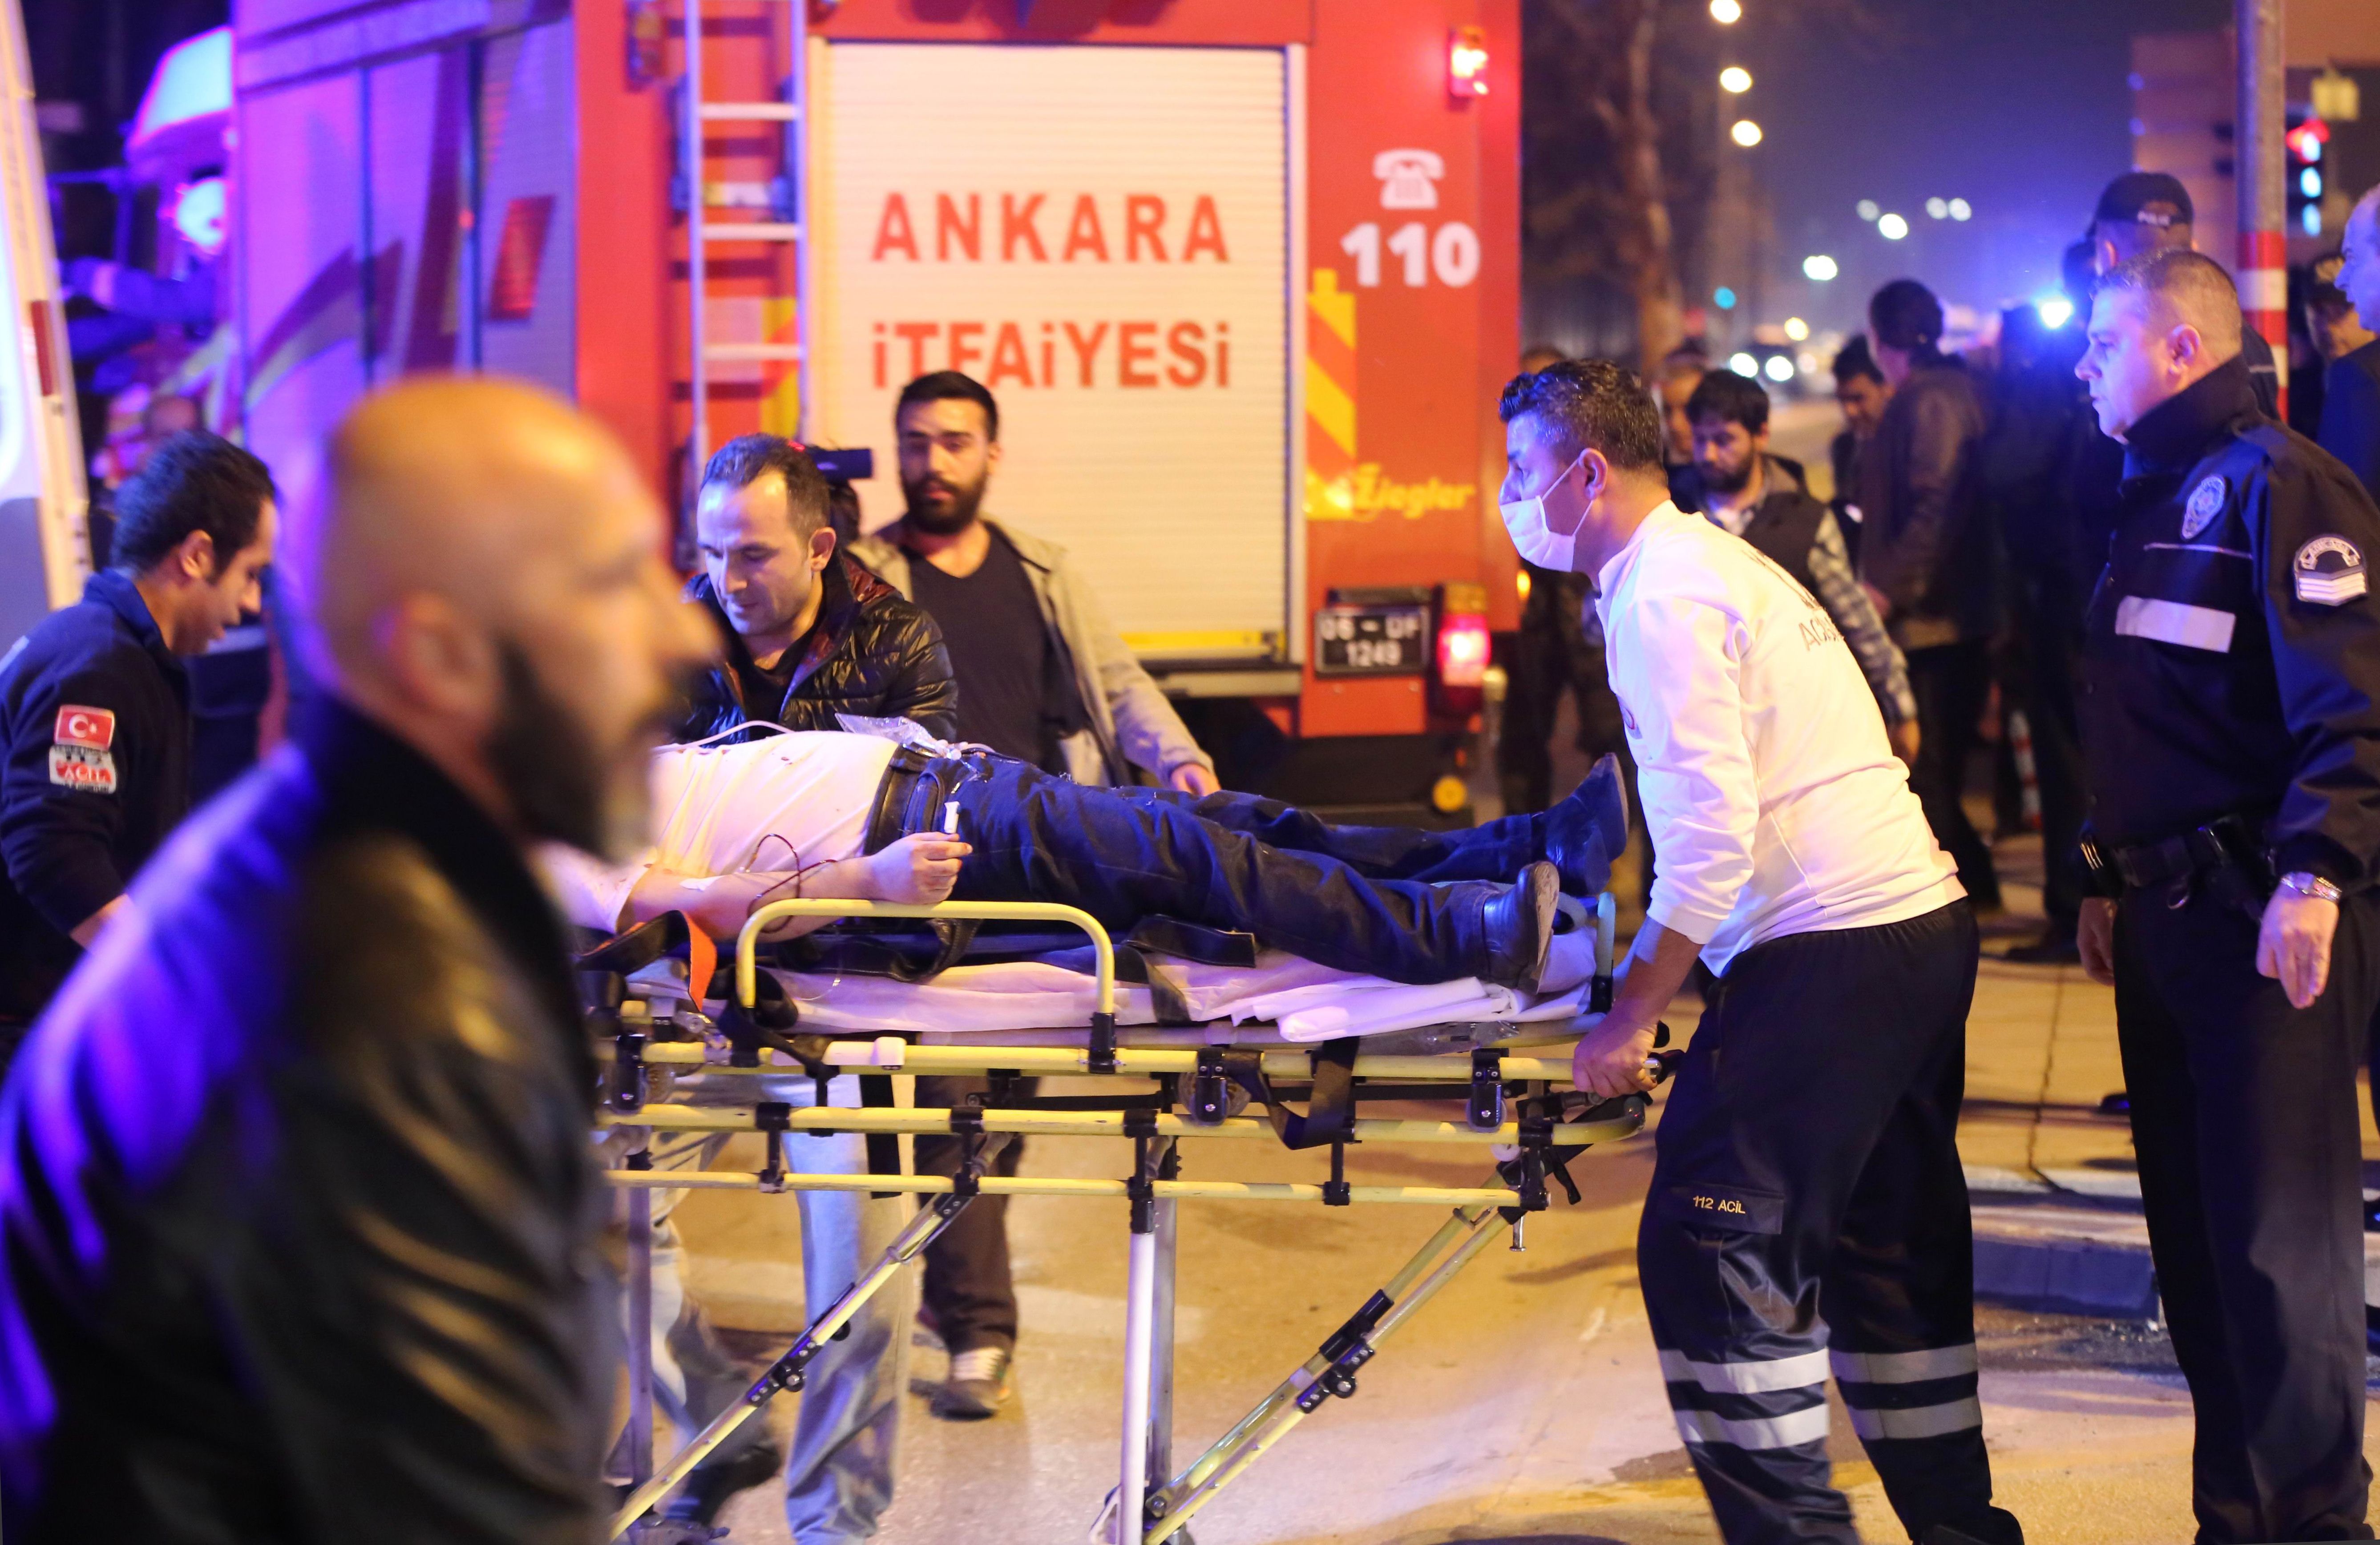 A car bombing in Ankara, Turkey injures and kills many. 